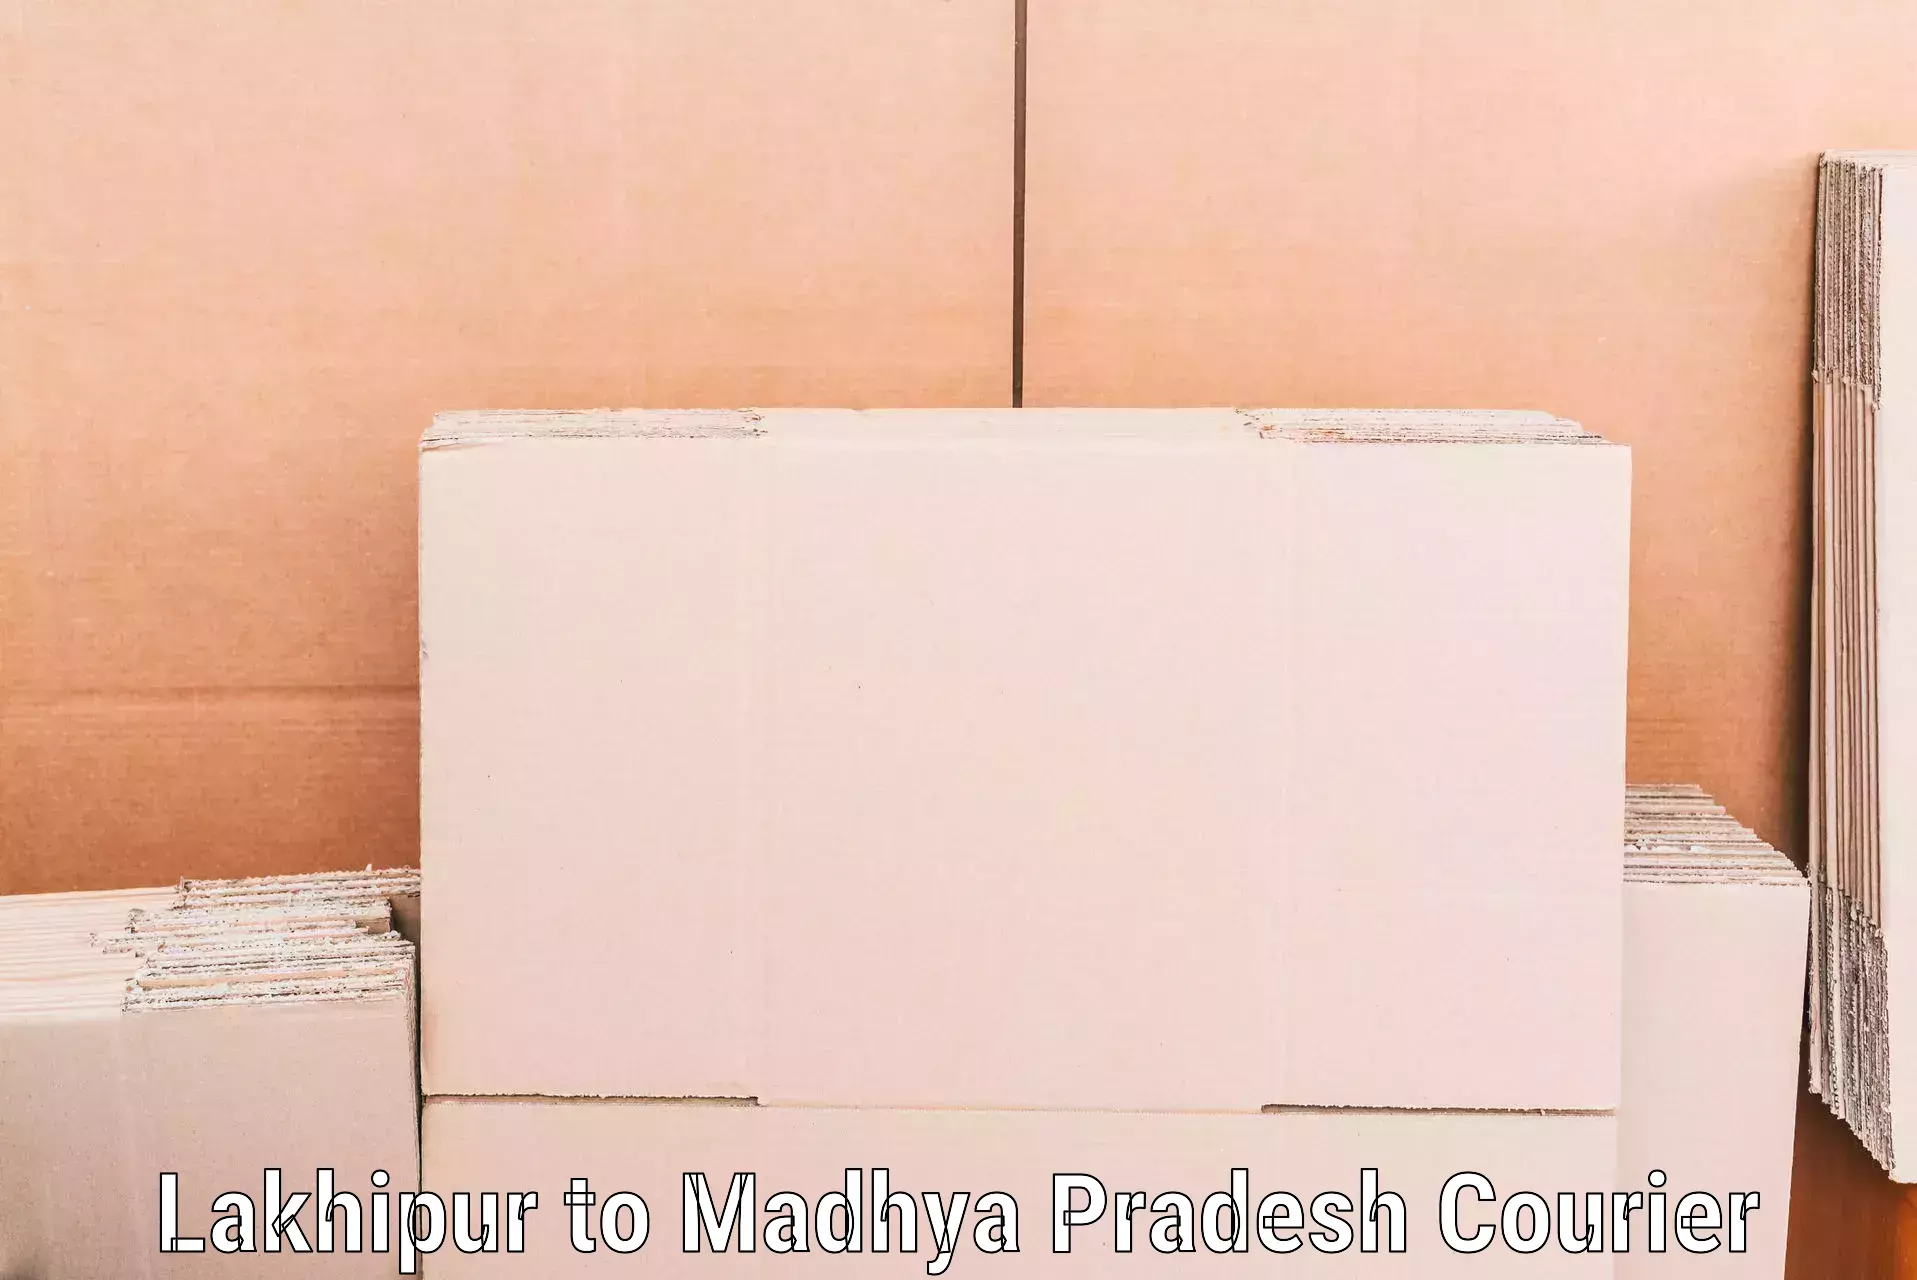 Furniture moving experts Lakhipur to Raisen